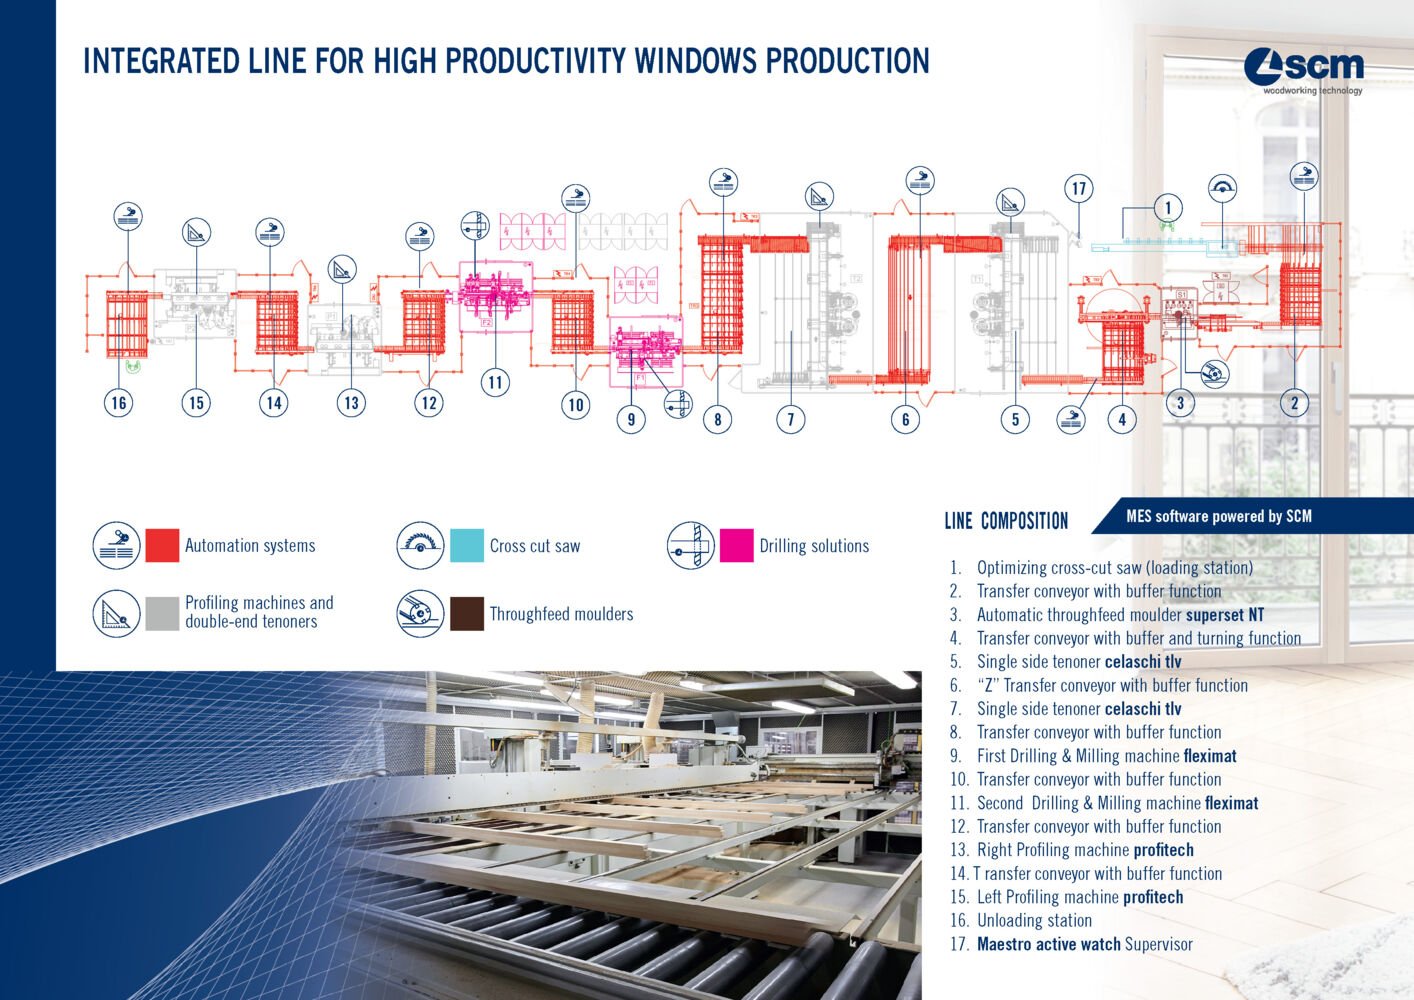 Linea integrata ad alta produttività per la lavorazione di finestre